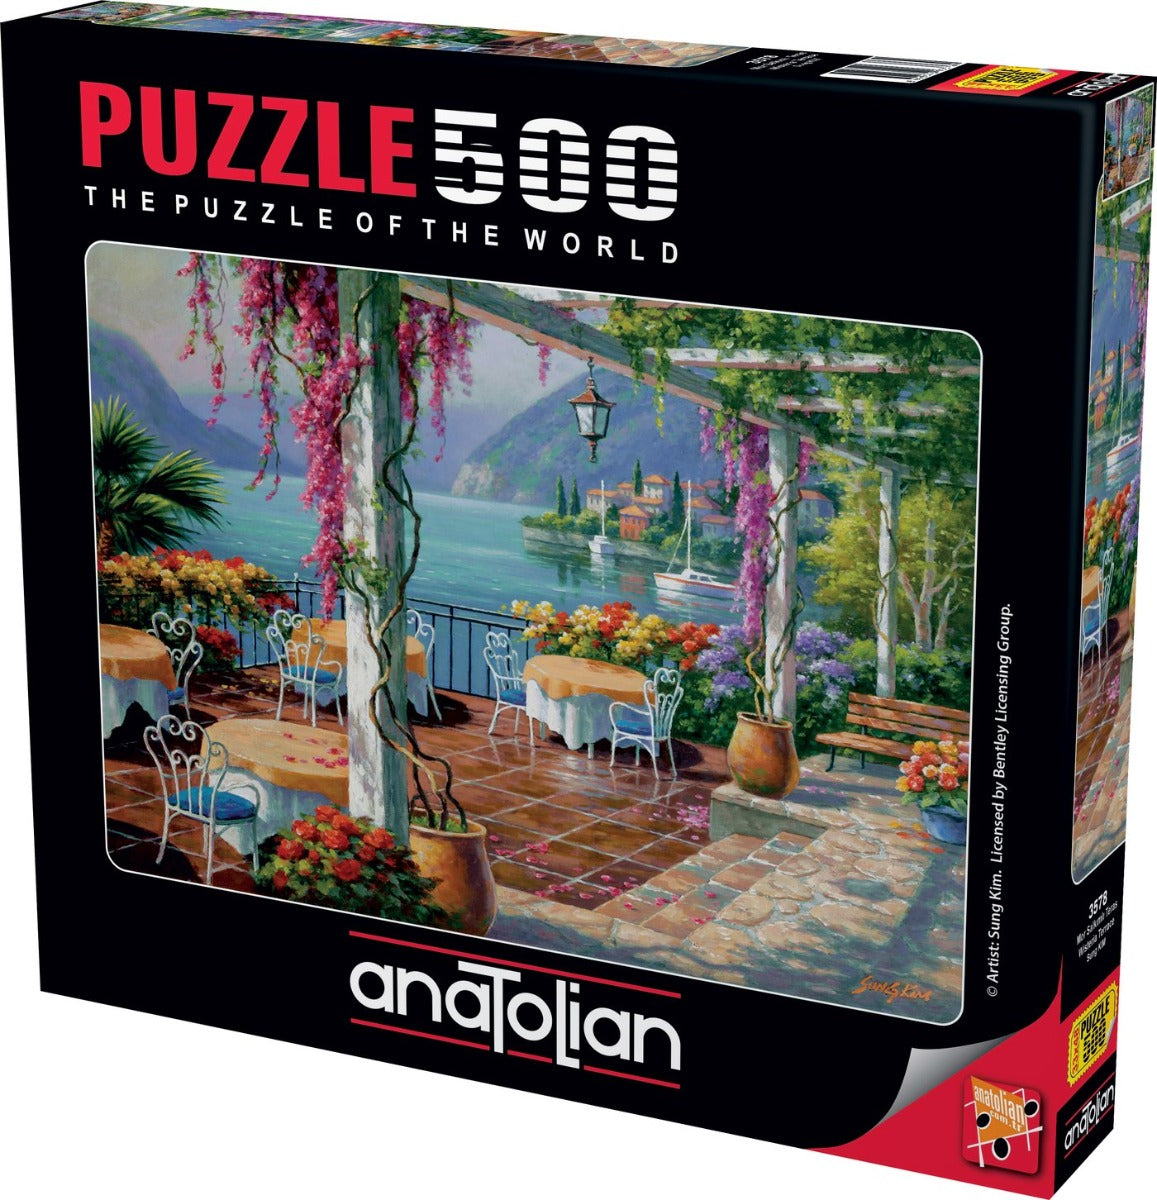 Anatolian - Wisteria Terrace - 500 Piece Jigsaw Puzzle